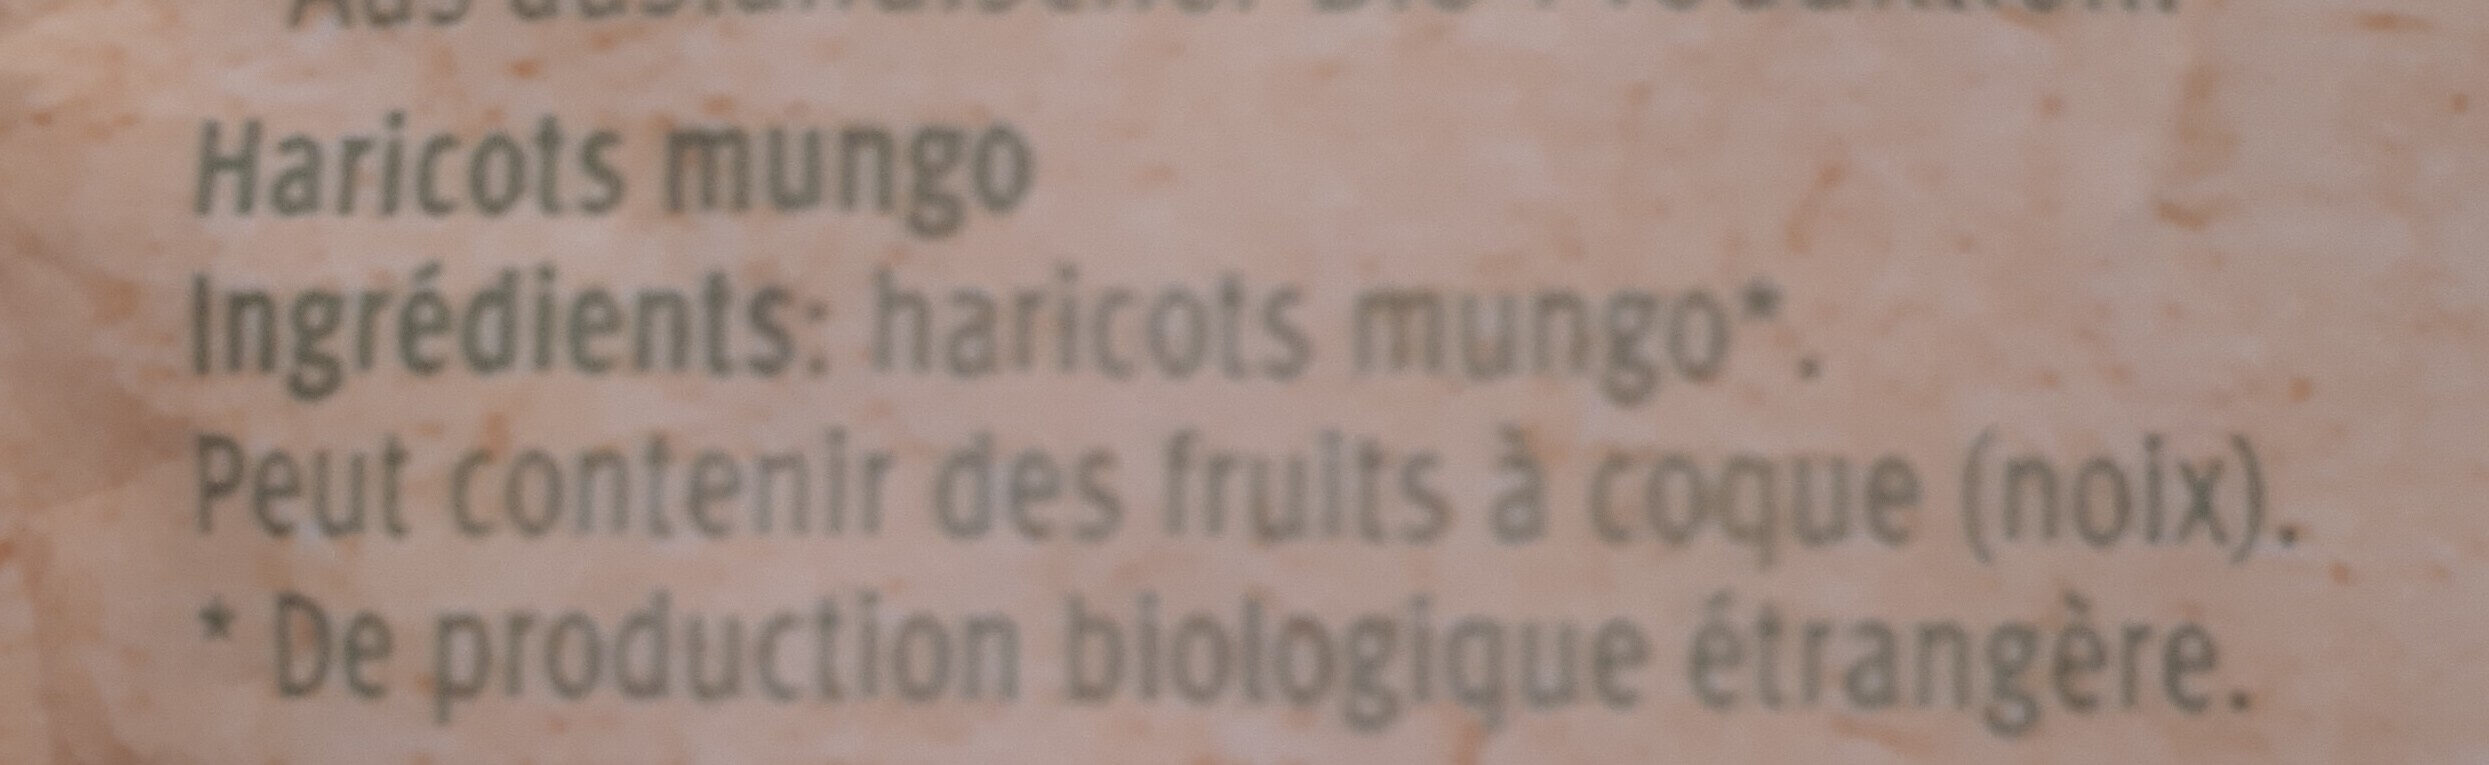 Haricots mungo - Ingredienti - fr